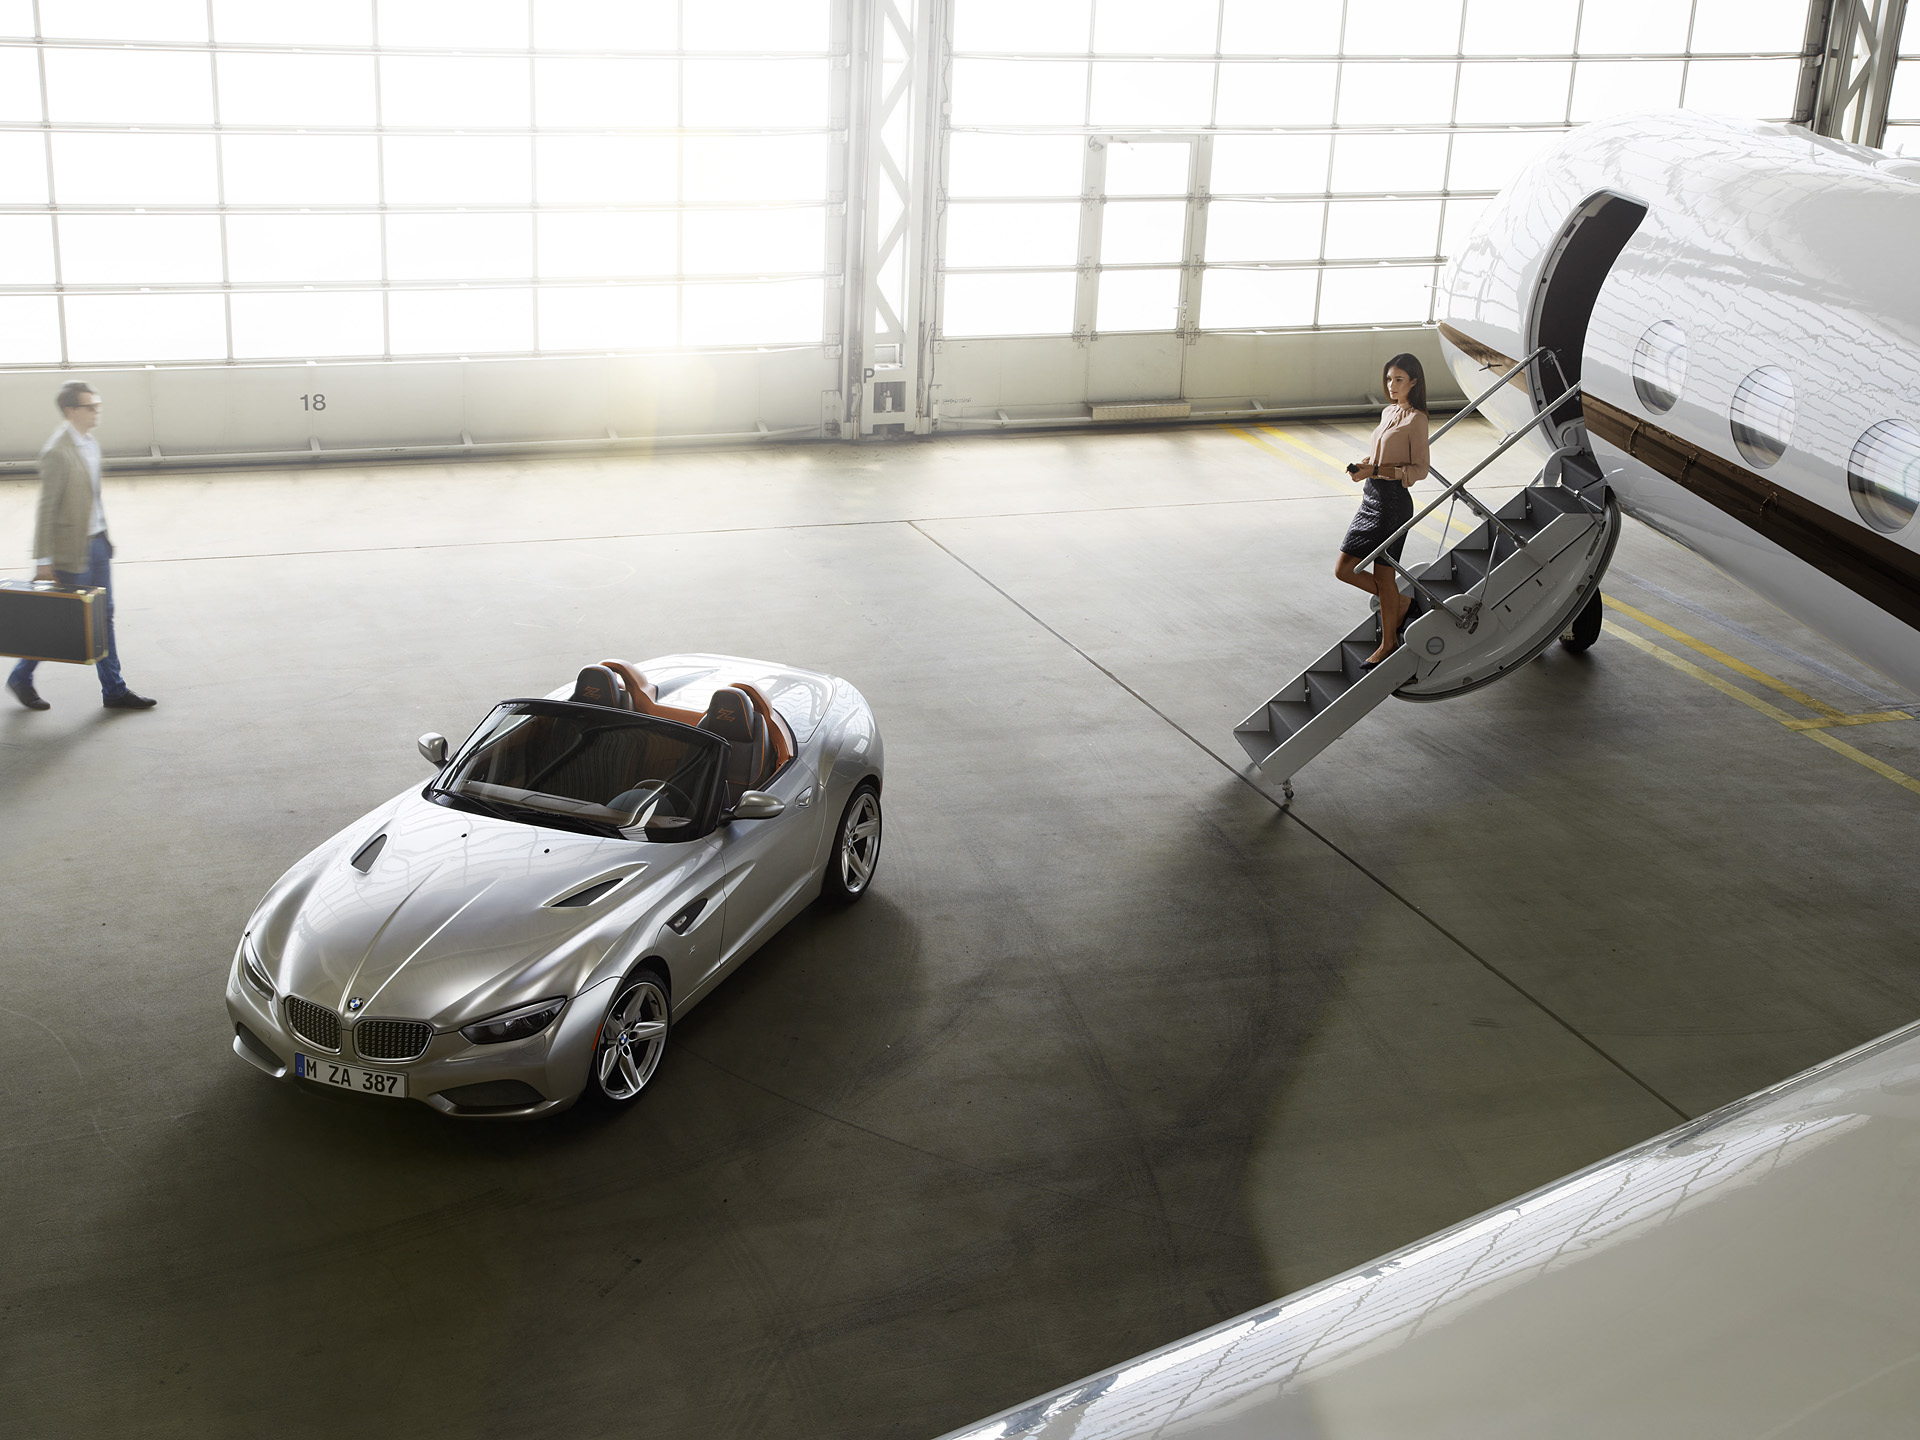  2012 BMW Zagato Roadster Concept Wallpaper.